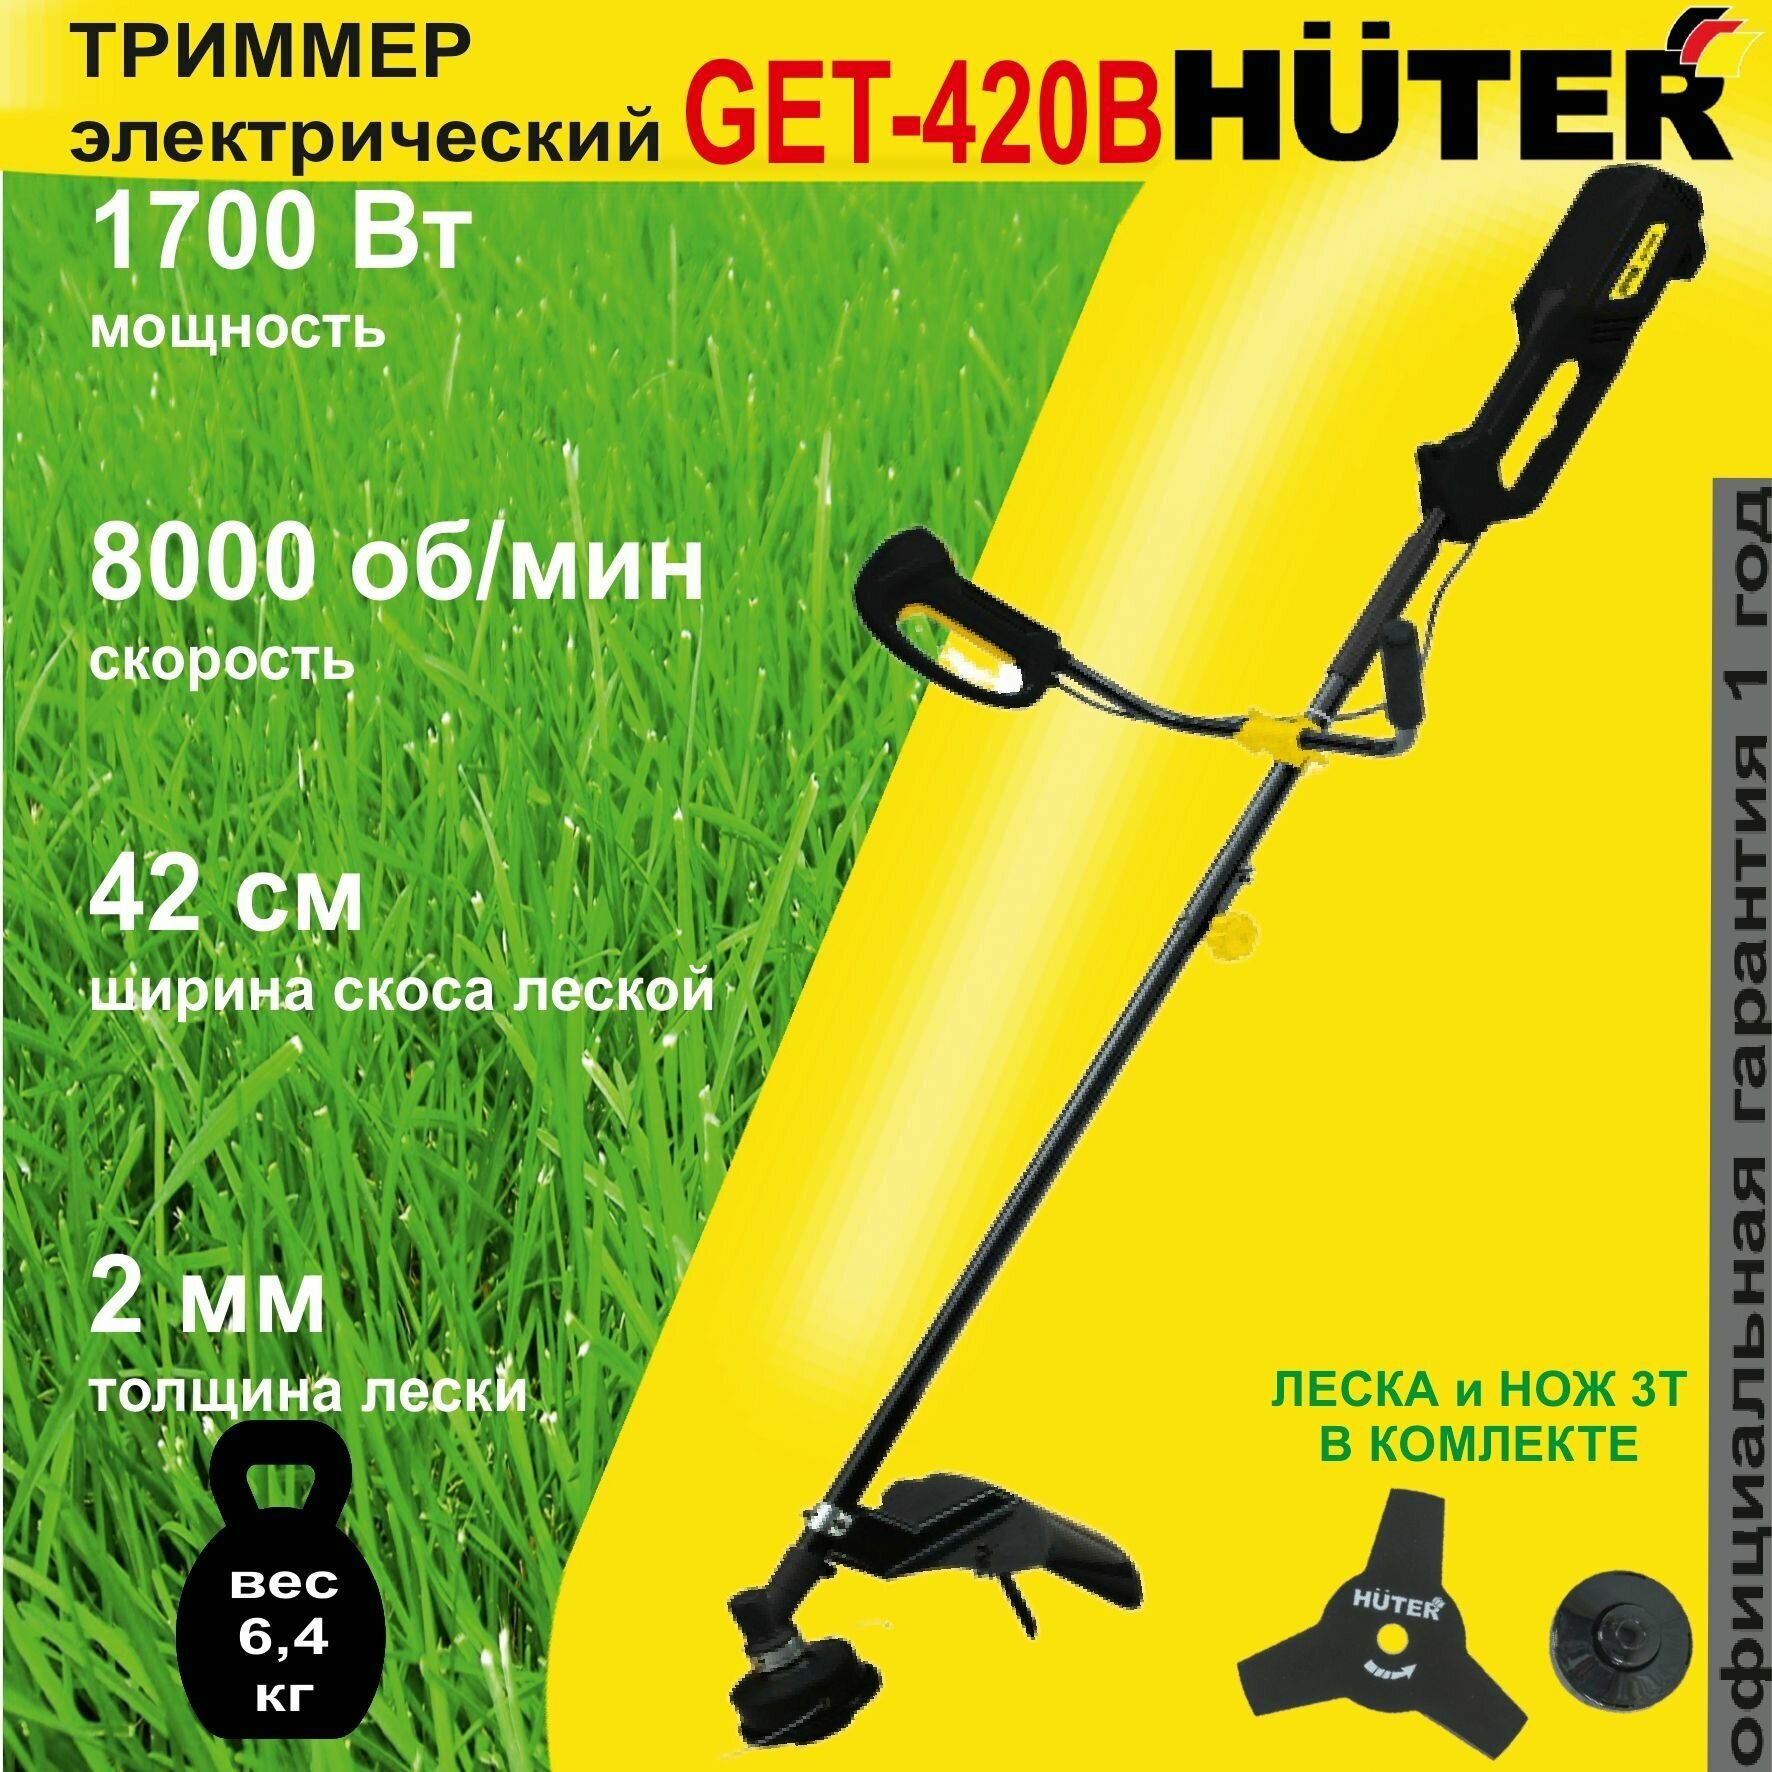 Электрический триммер GET-420B Huter / 1700 Вт / триммер садовый для травы и газона